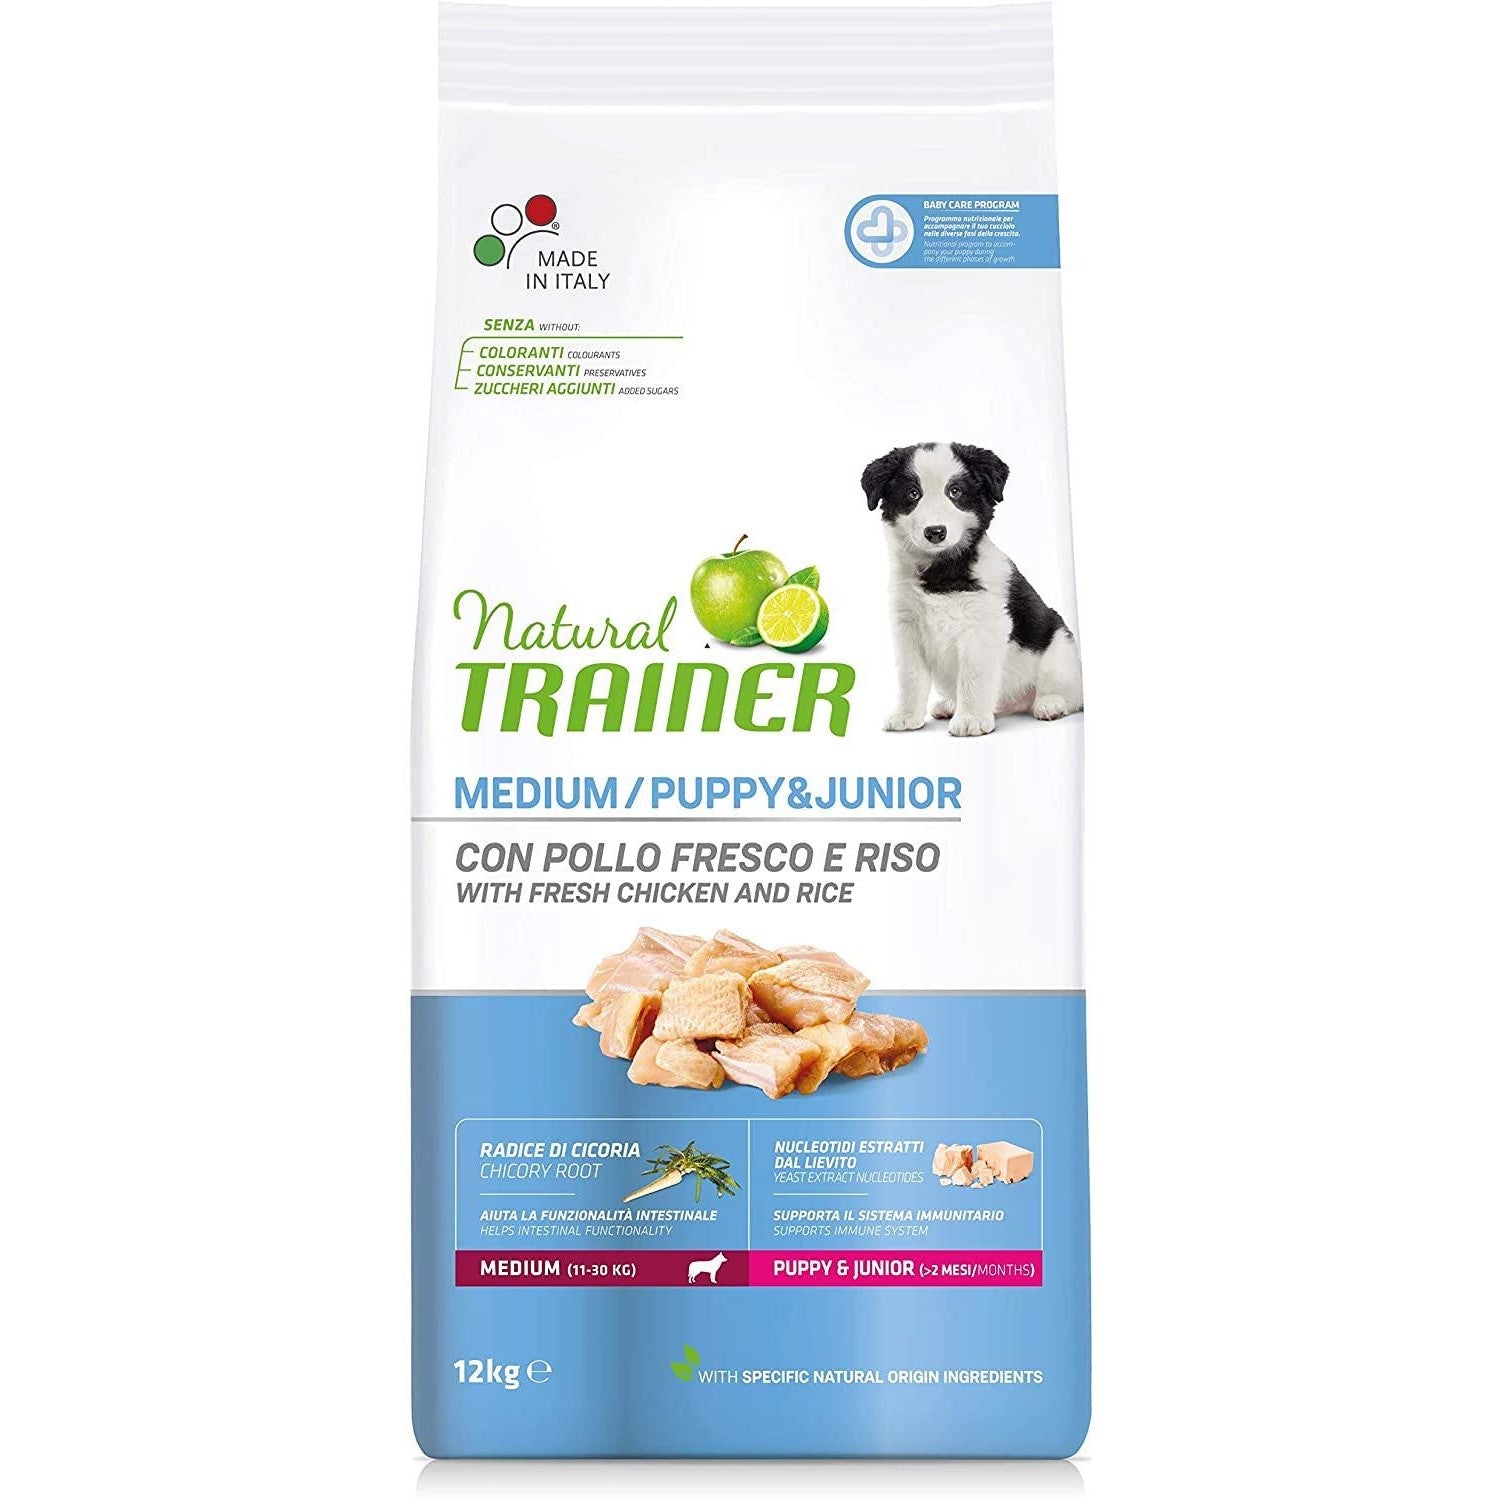 Natural Trainer per cani Puppy & Junior Medium 12 kg